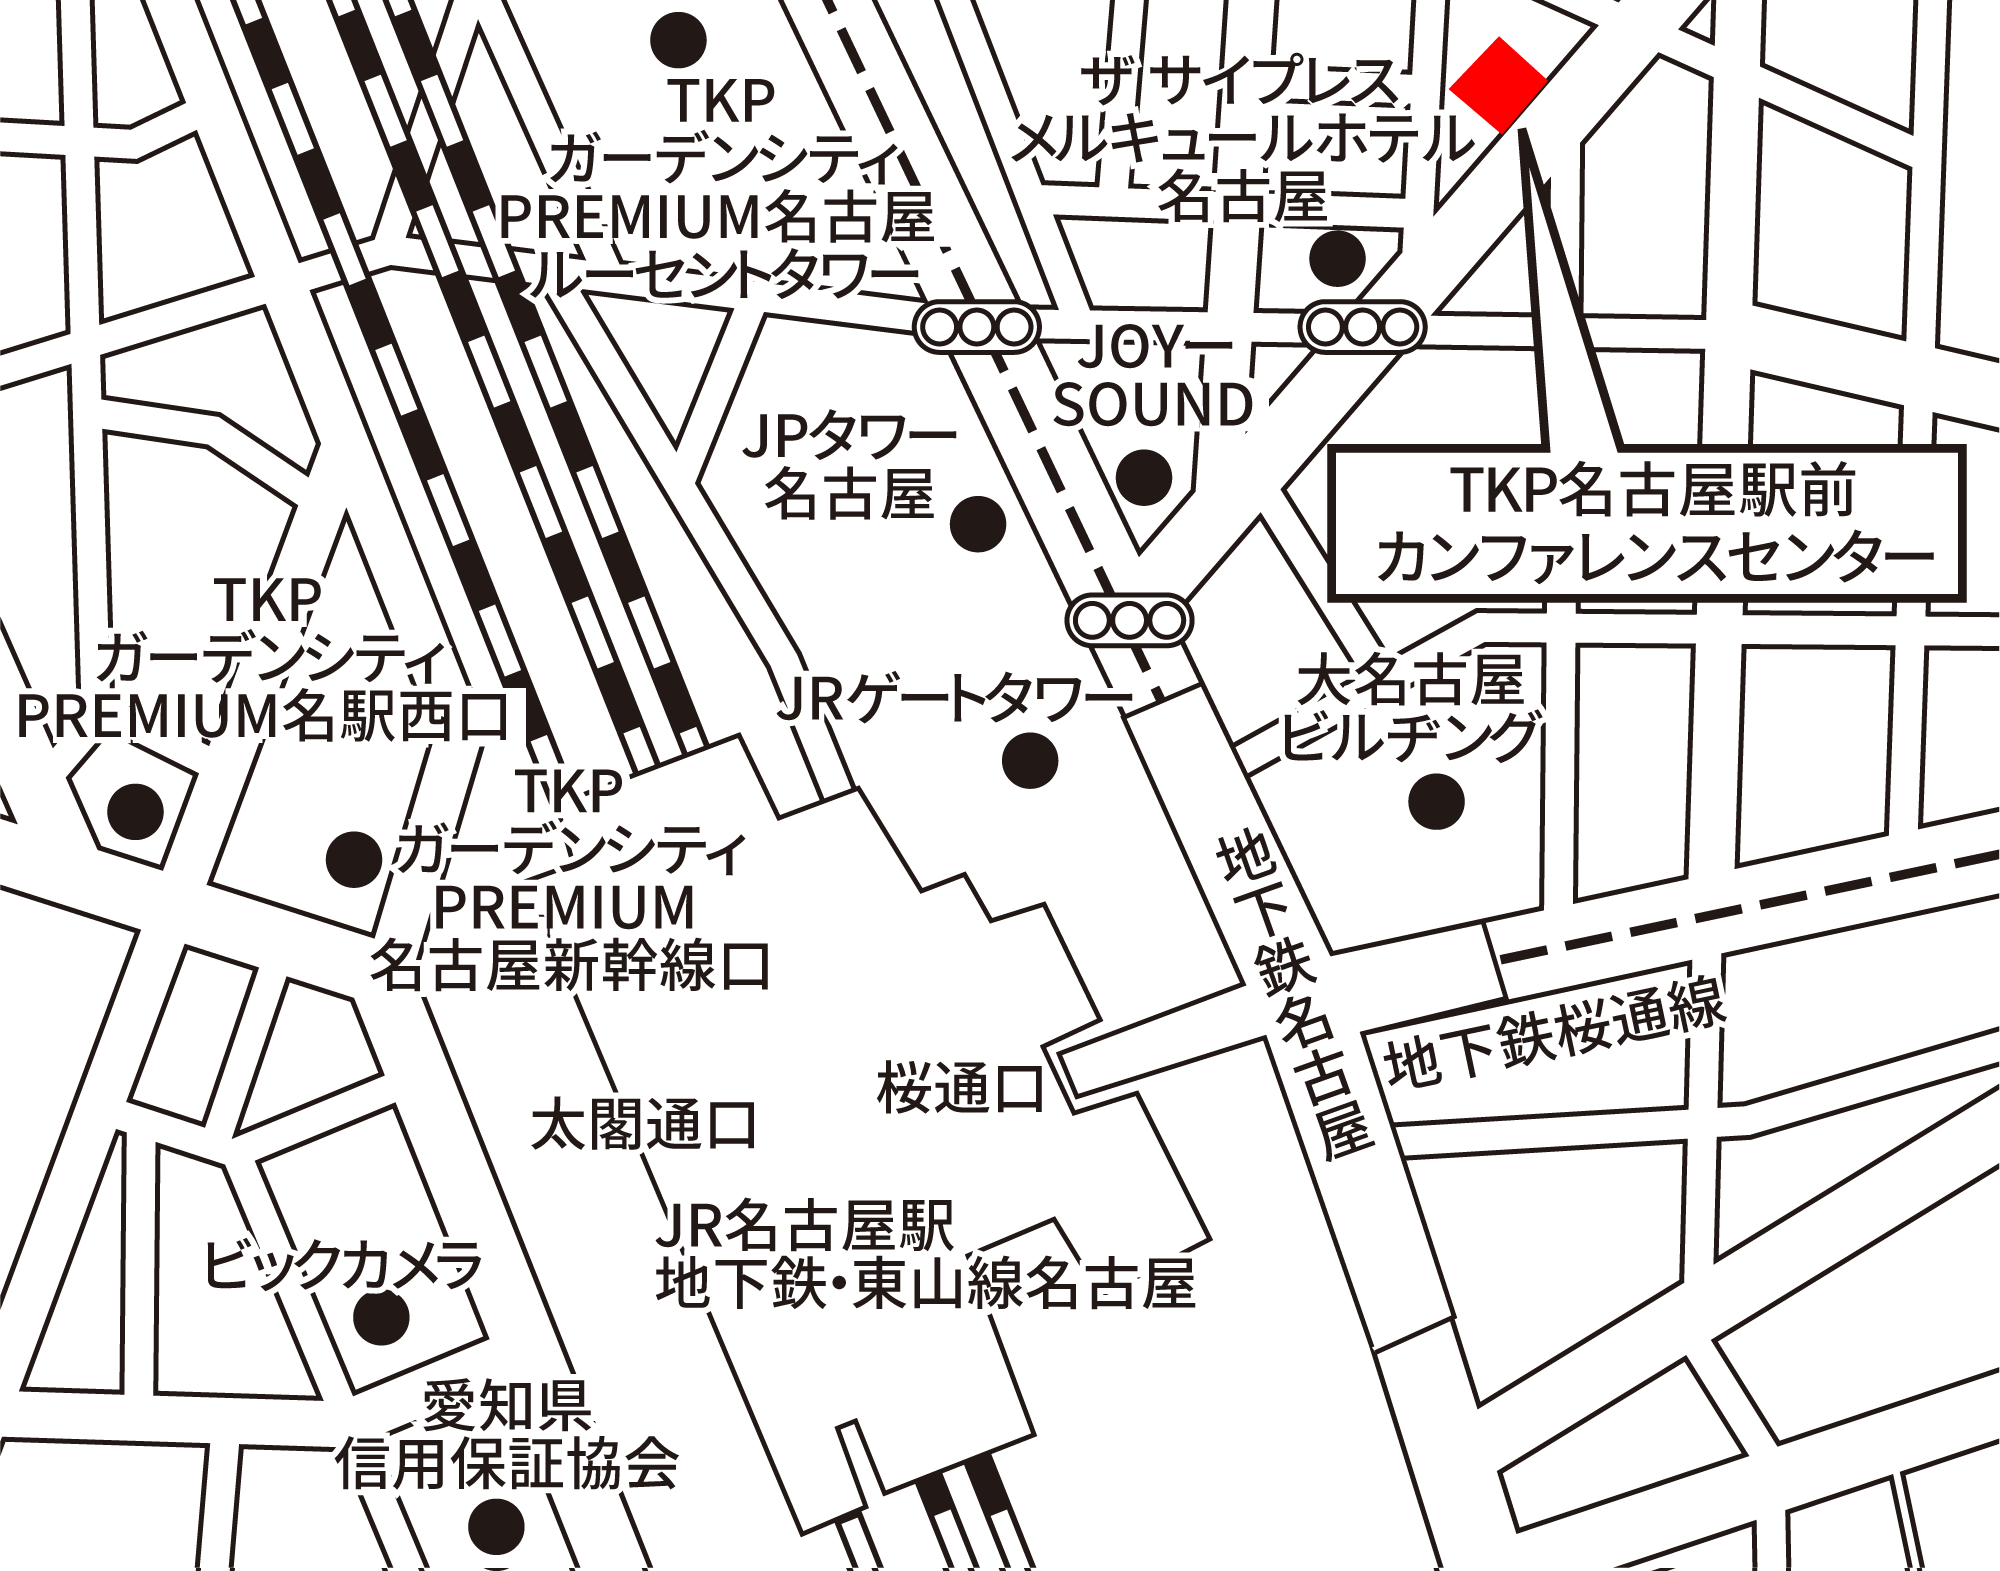 TKP名古屋駅前カンファレンスセンター 地図